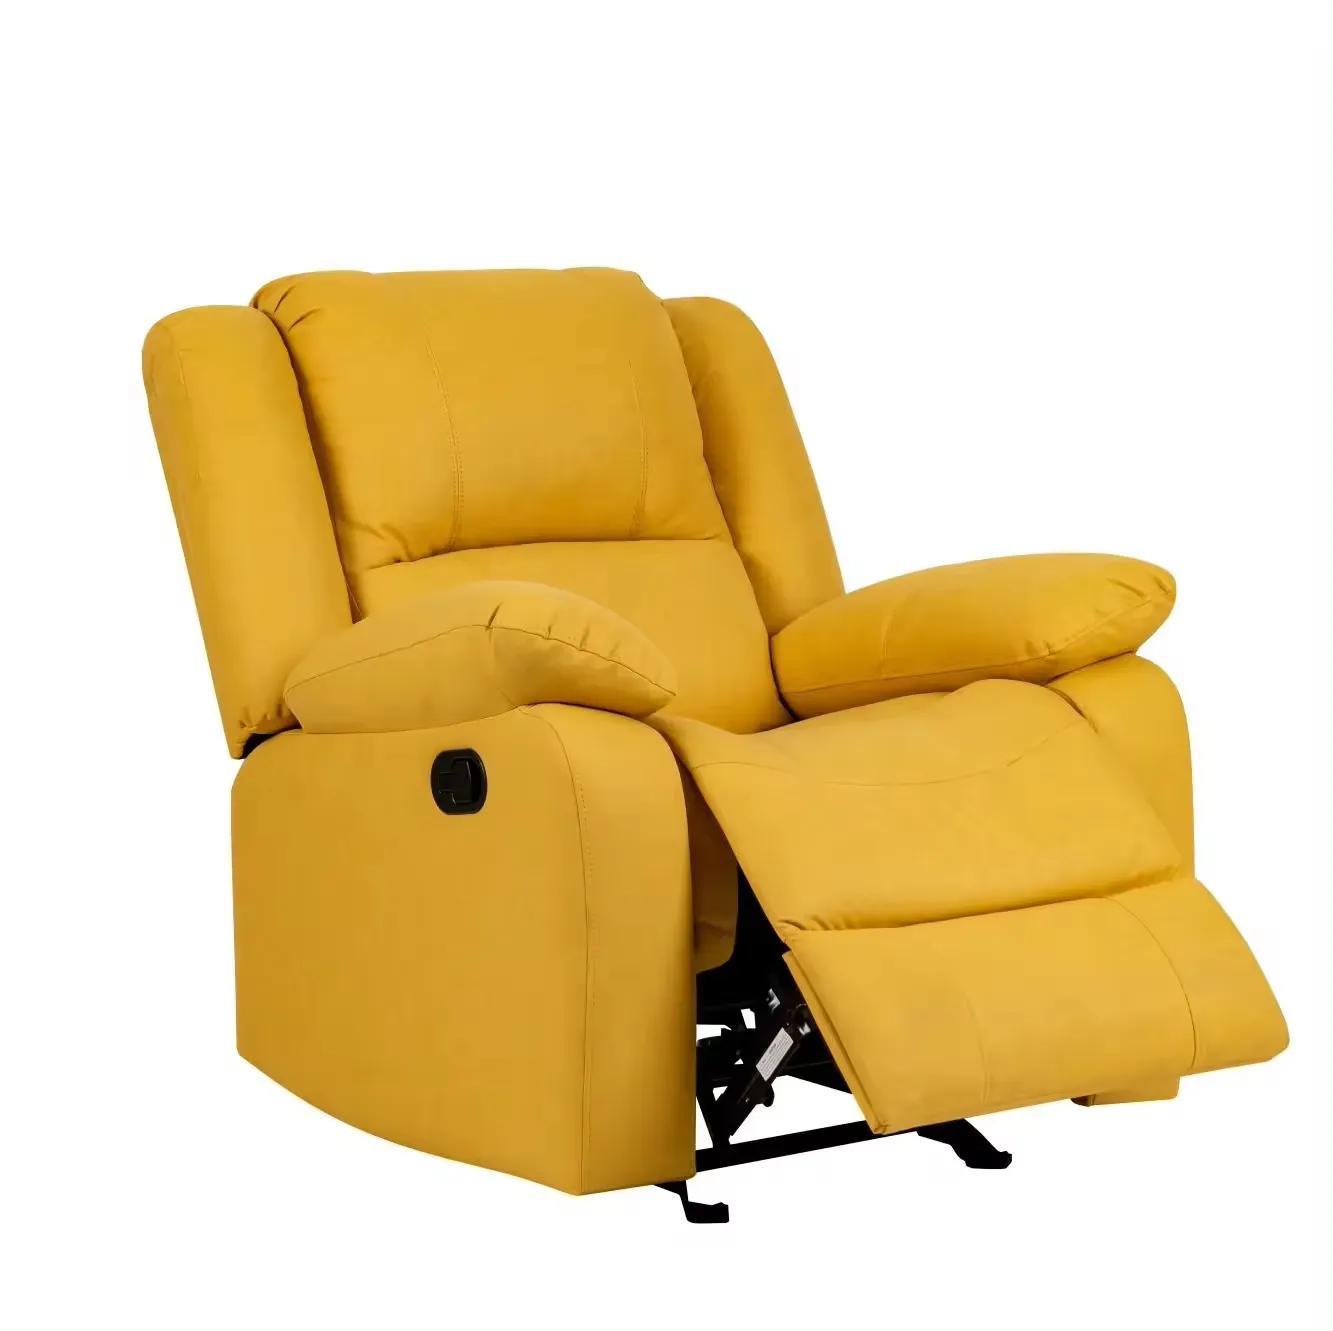 Sıcak satış mükemmel mikrofiber kumaş Recliner kanepe sandalye oturma odası mobilya deri kesit Recliner kanepeler